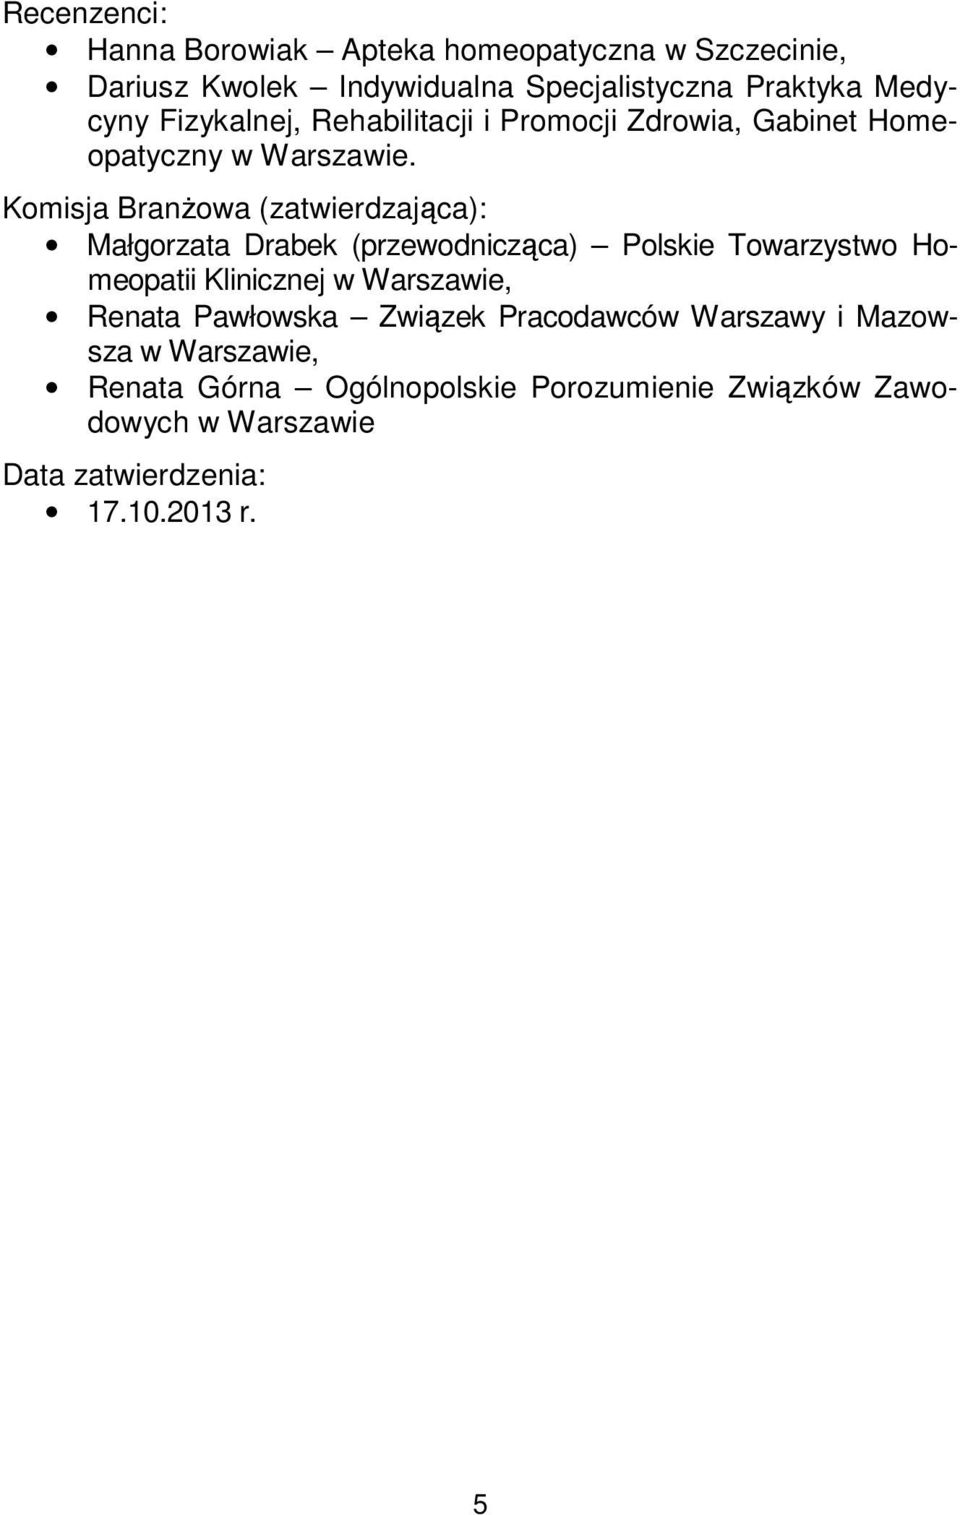 Komisja Branżowa (zatwierdzająca): Małgorzata Drabek (przewodnicząca) Polskie Towarzystwo Homeopatii Klinicznej w Warszawie,